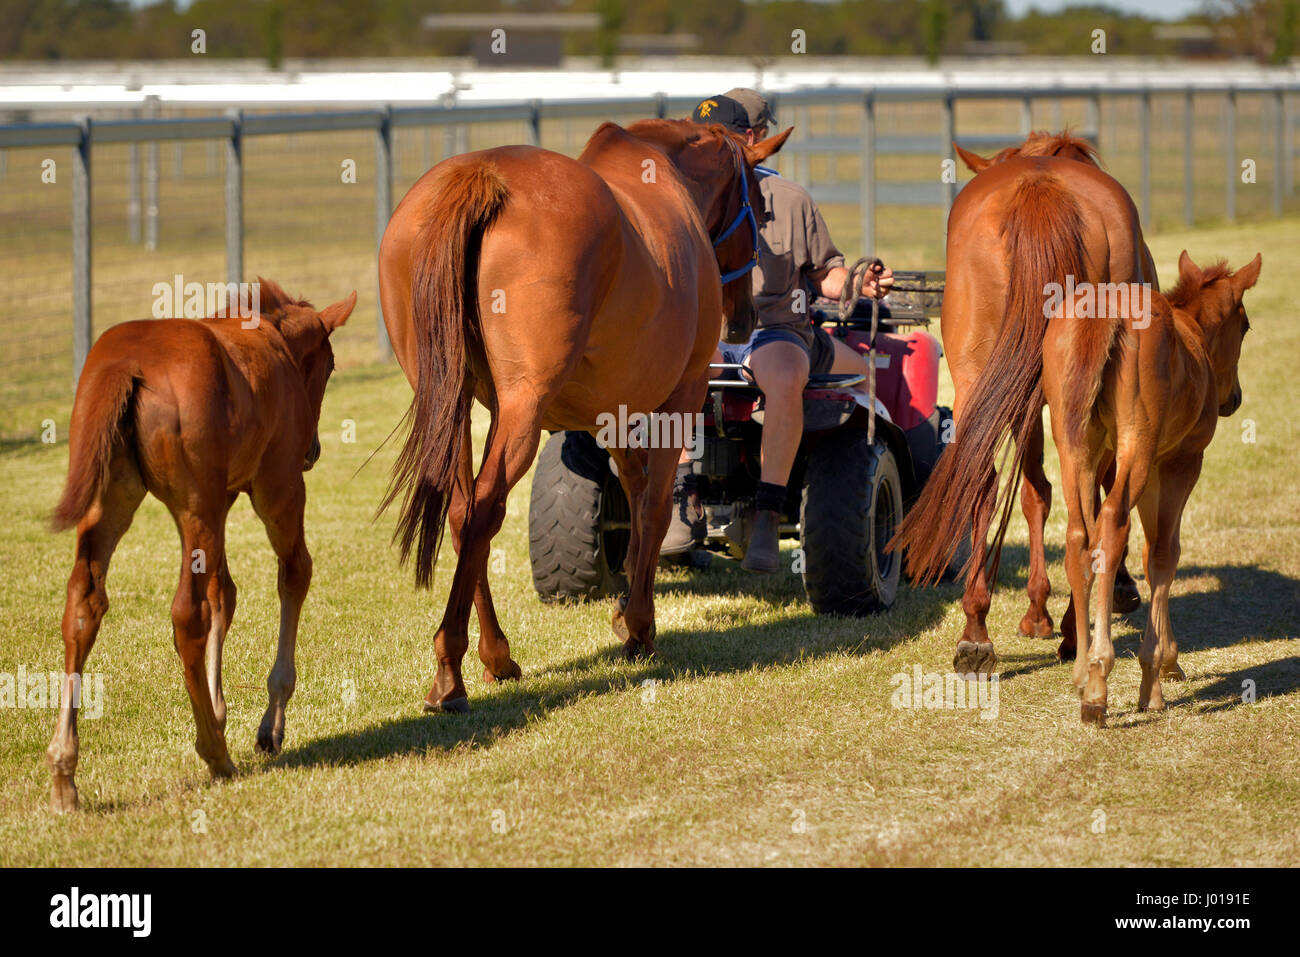 Los caballos de carreras de pura sangre en formación en un criadero. Foto de stock